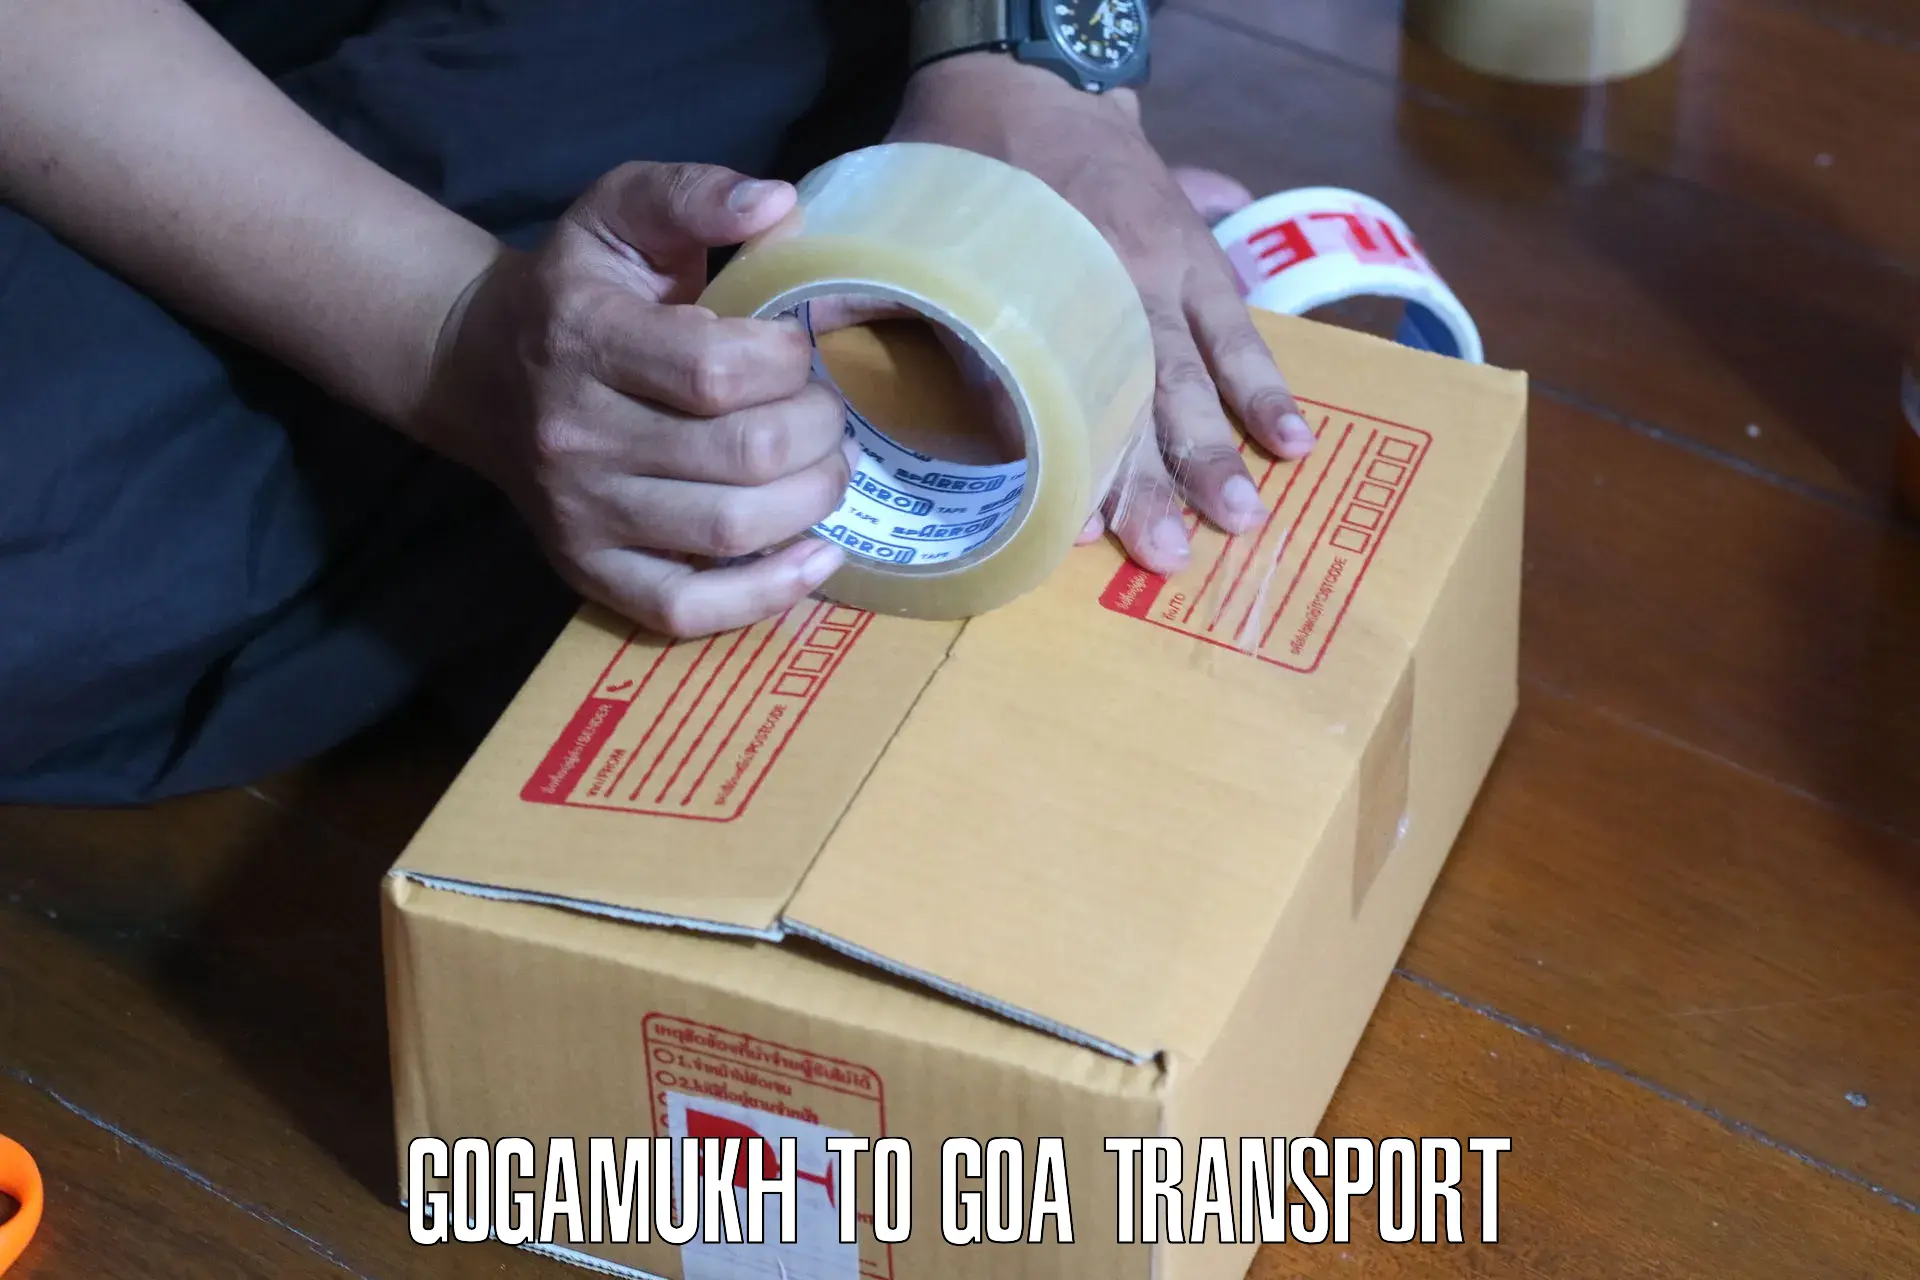 International cargo transportation services Gogamukh to Bardez